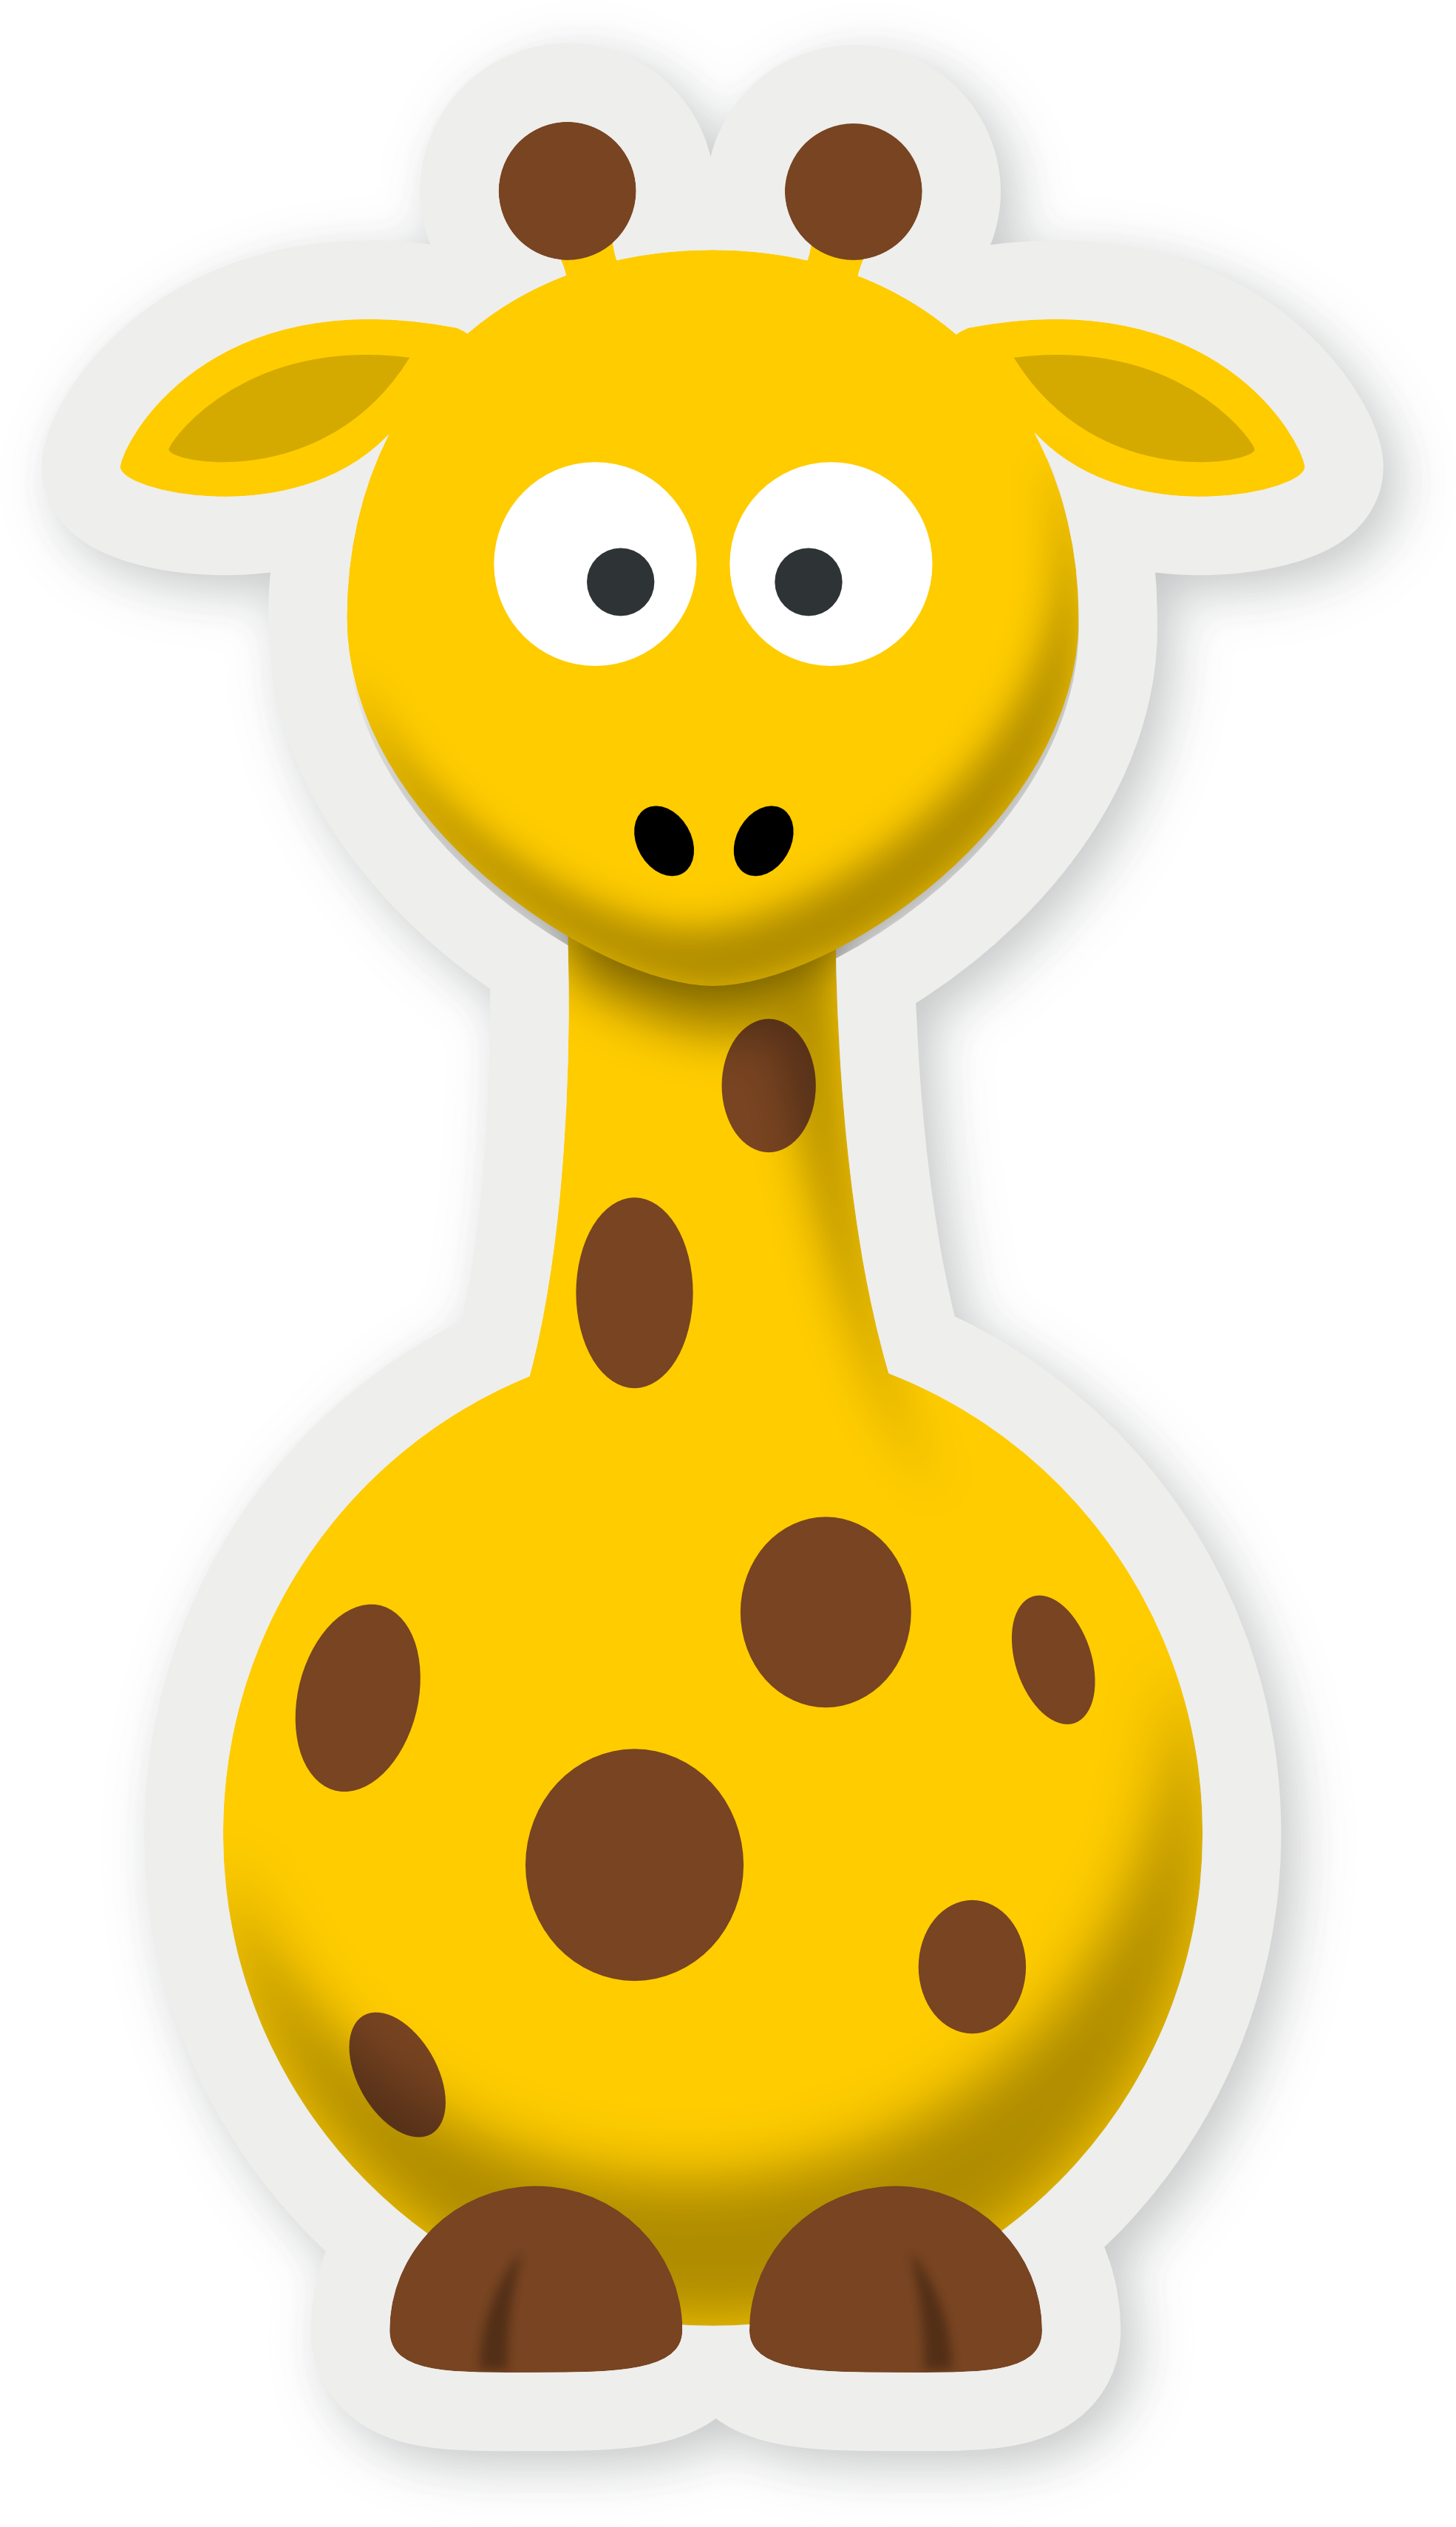 Pics Of Cartoon Giraffes Giraffe Cartoon Without Background